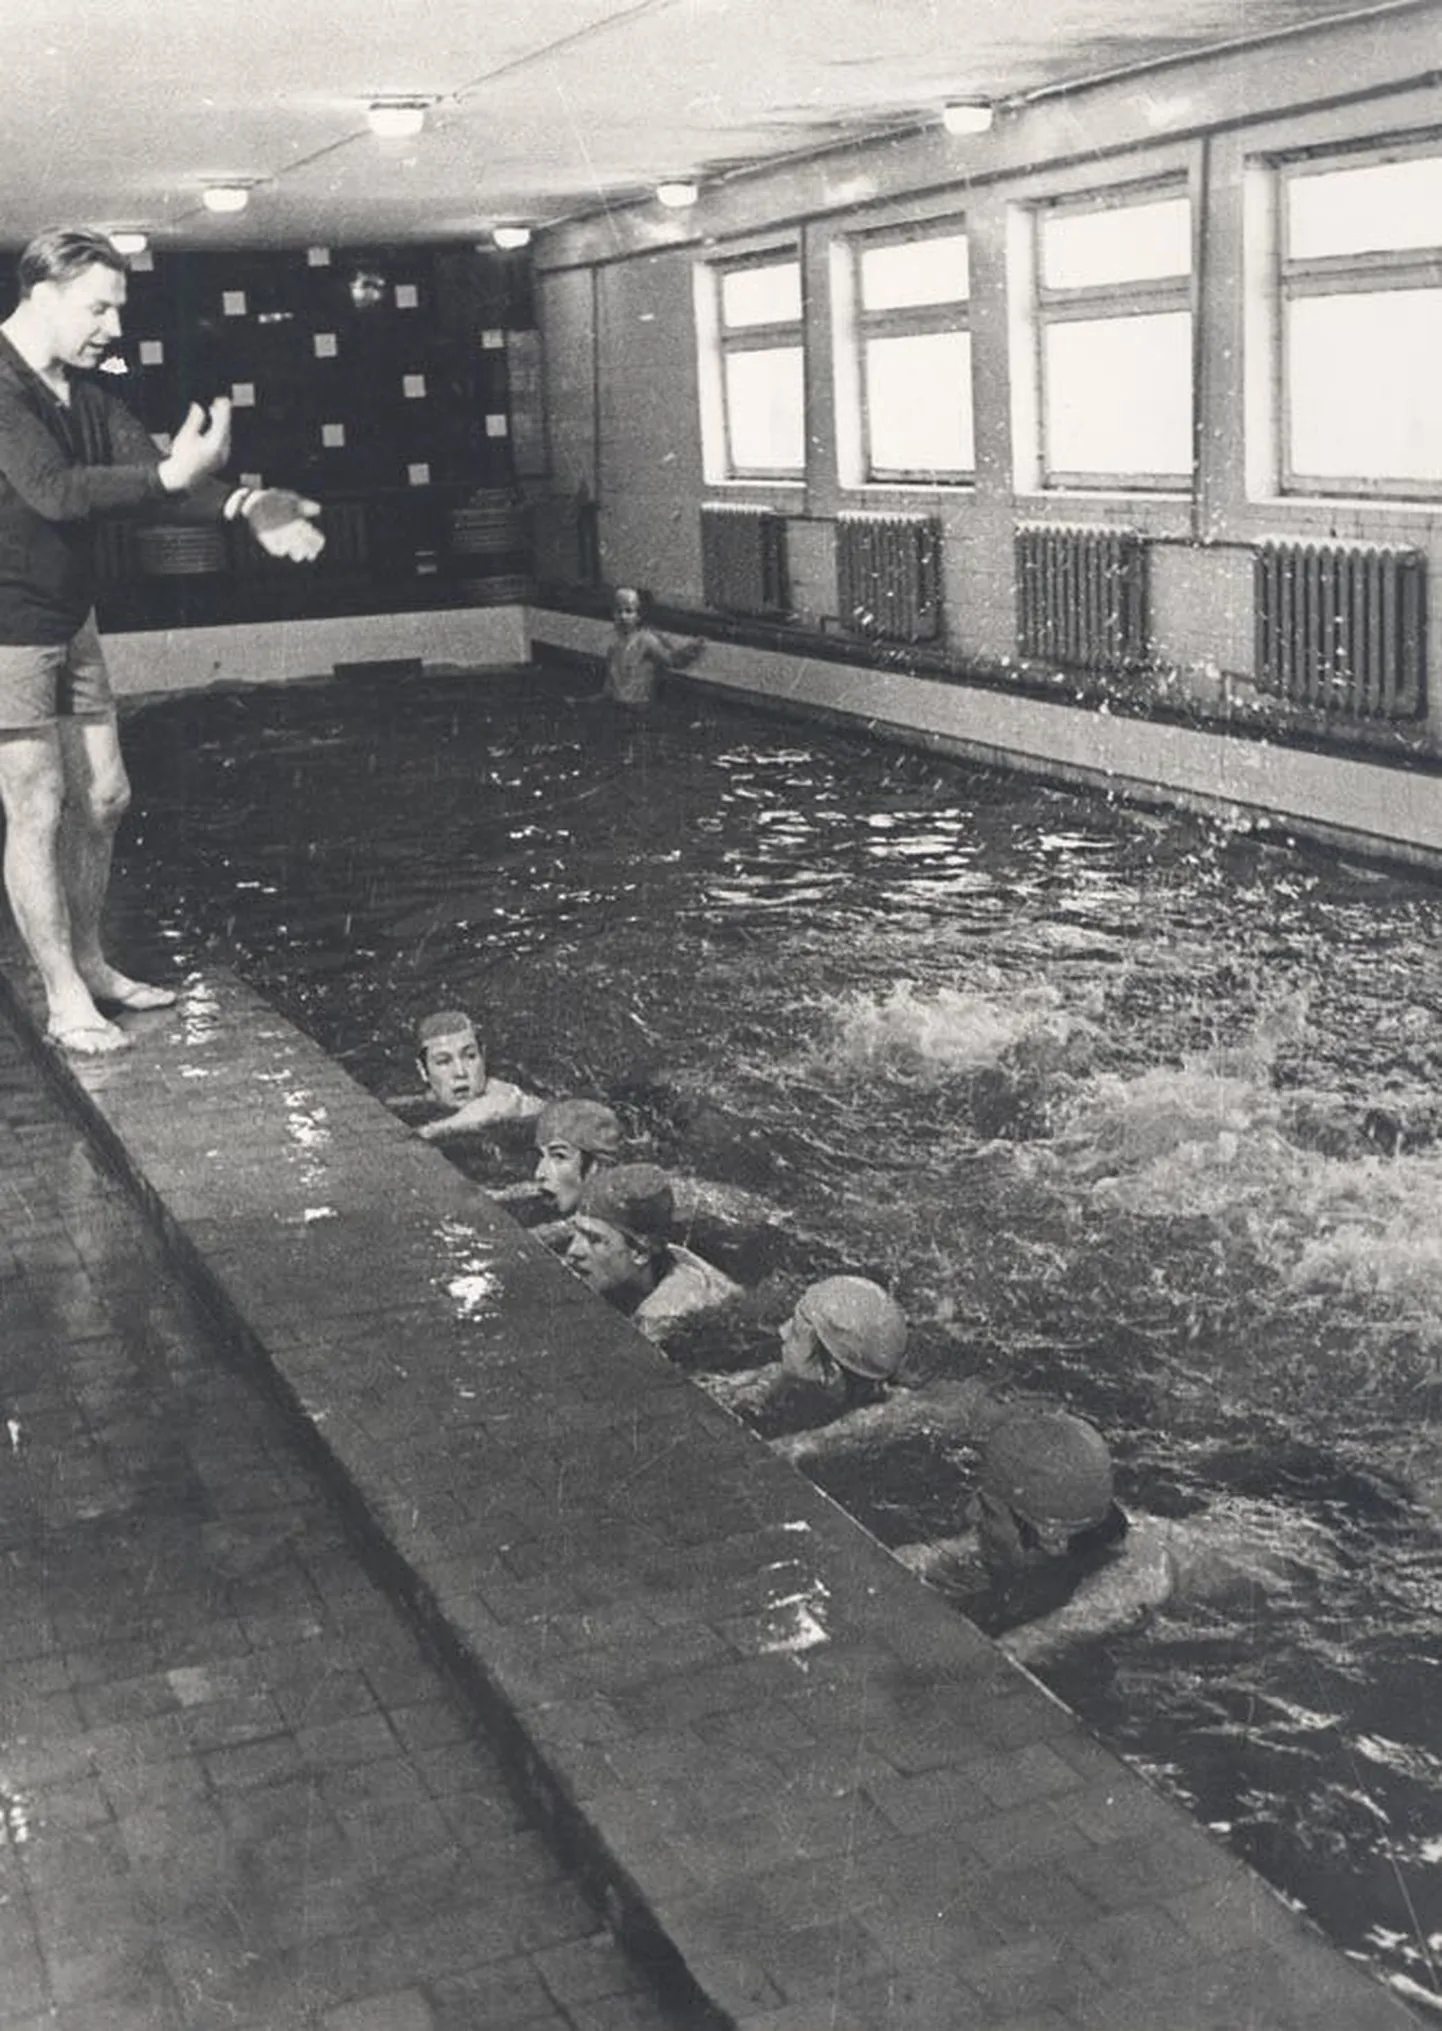 Kehalise kasvatuse õpetajast, ujumisfanaatikust Toivo Grosbergist kujunes aastakümnetega Olustveres legend. Tema valju hääle ja muheda jutu saatel sai koolis ujumisharidust mitu põlvkonda põllumehi.